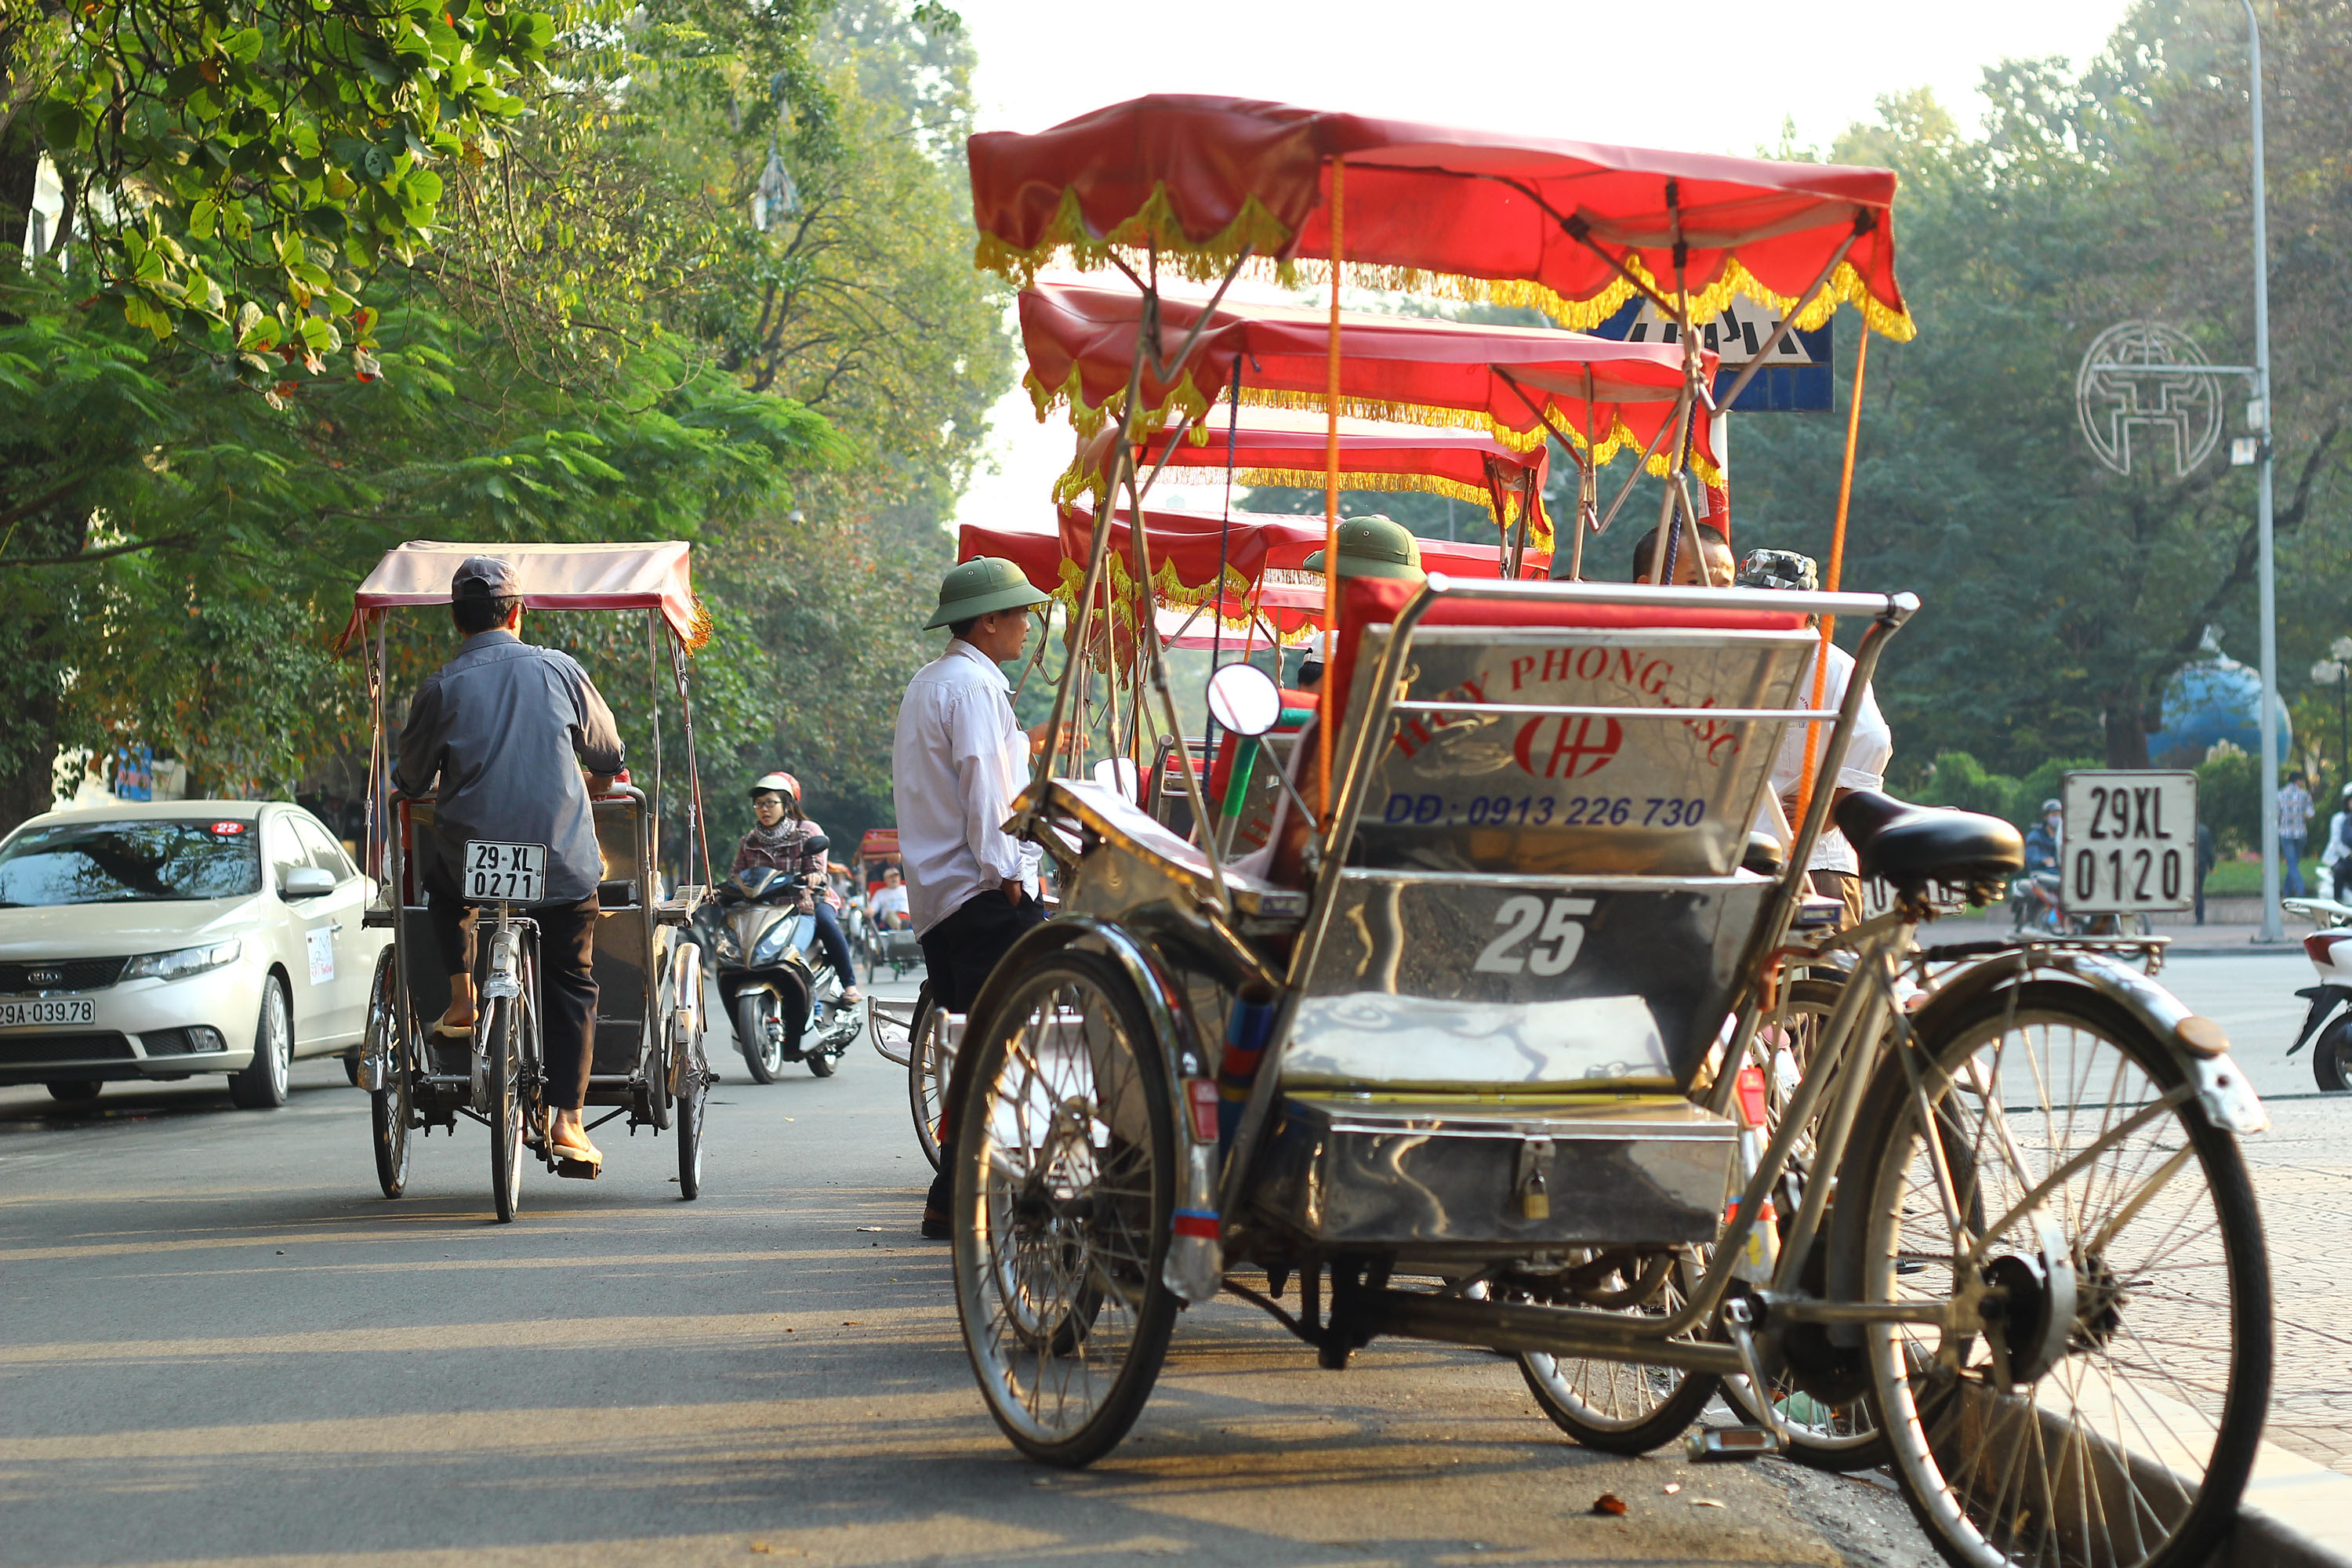 xích lô - phương tiện đi lại phổ biến khi du lịch Hà Nội